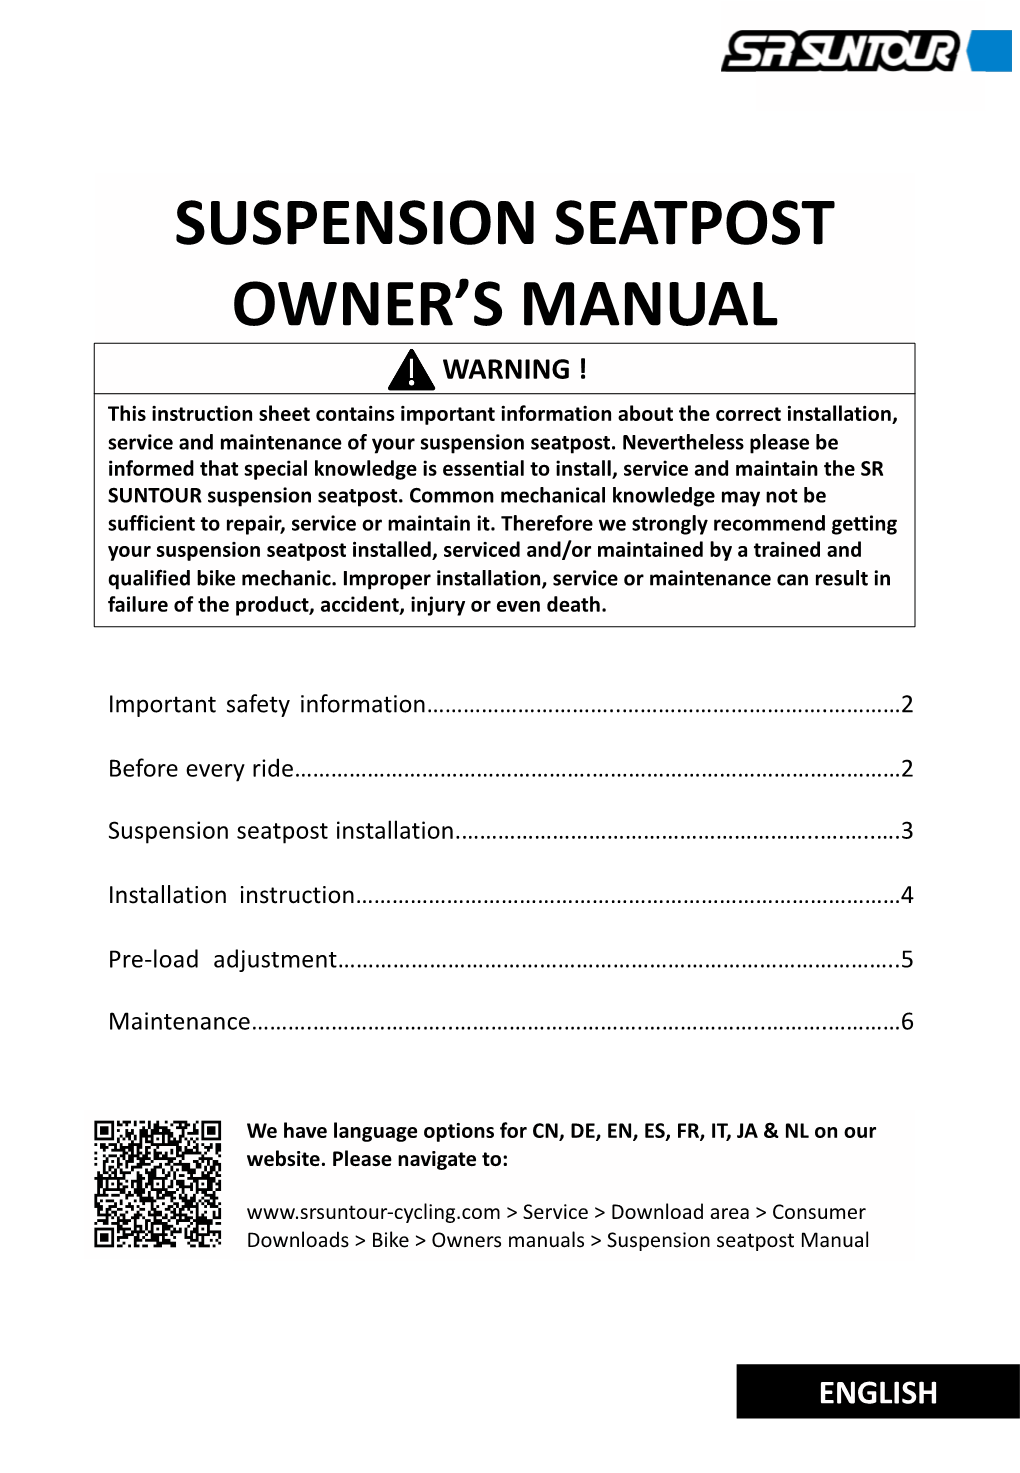 Suspension Seatpost Owner's Manual